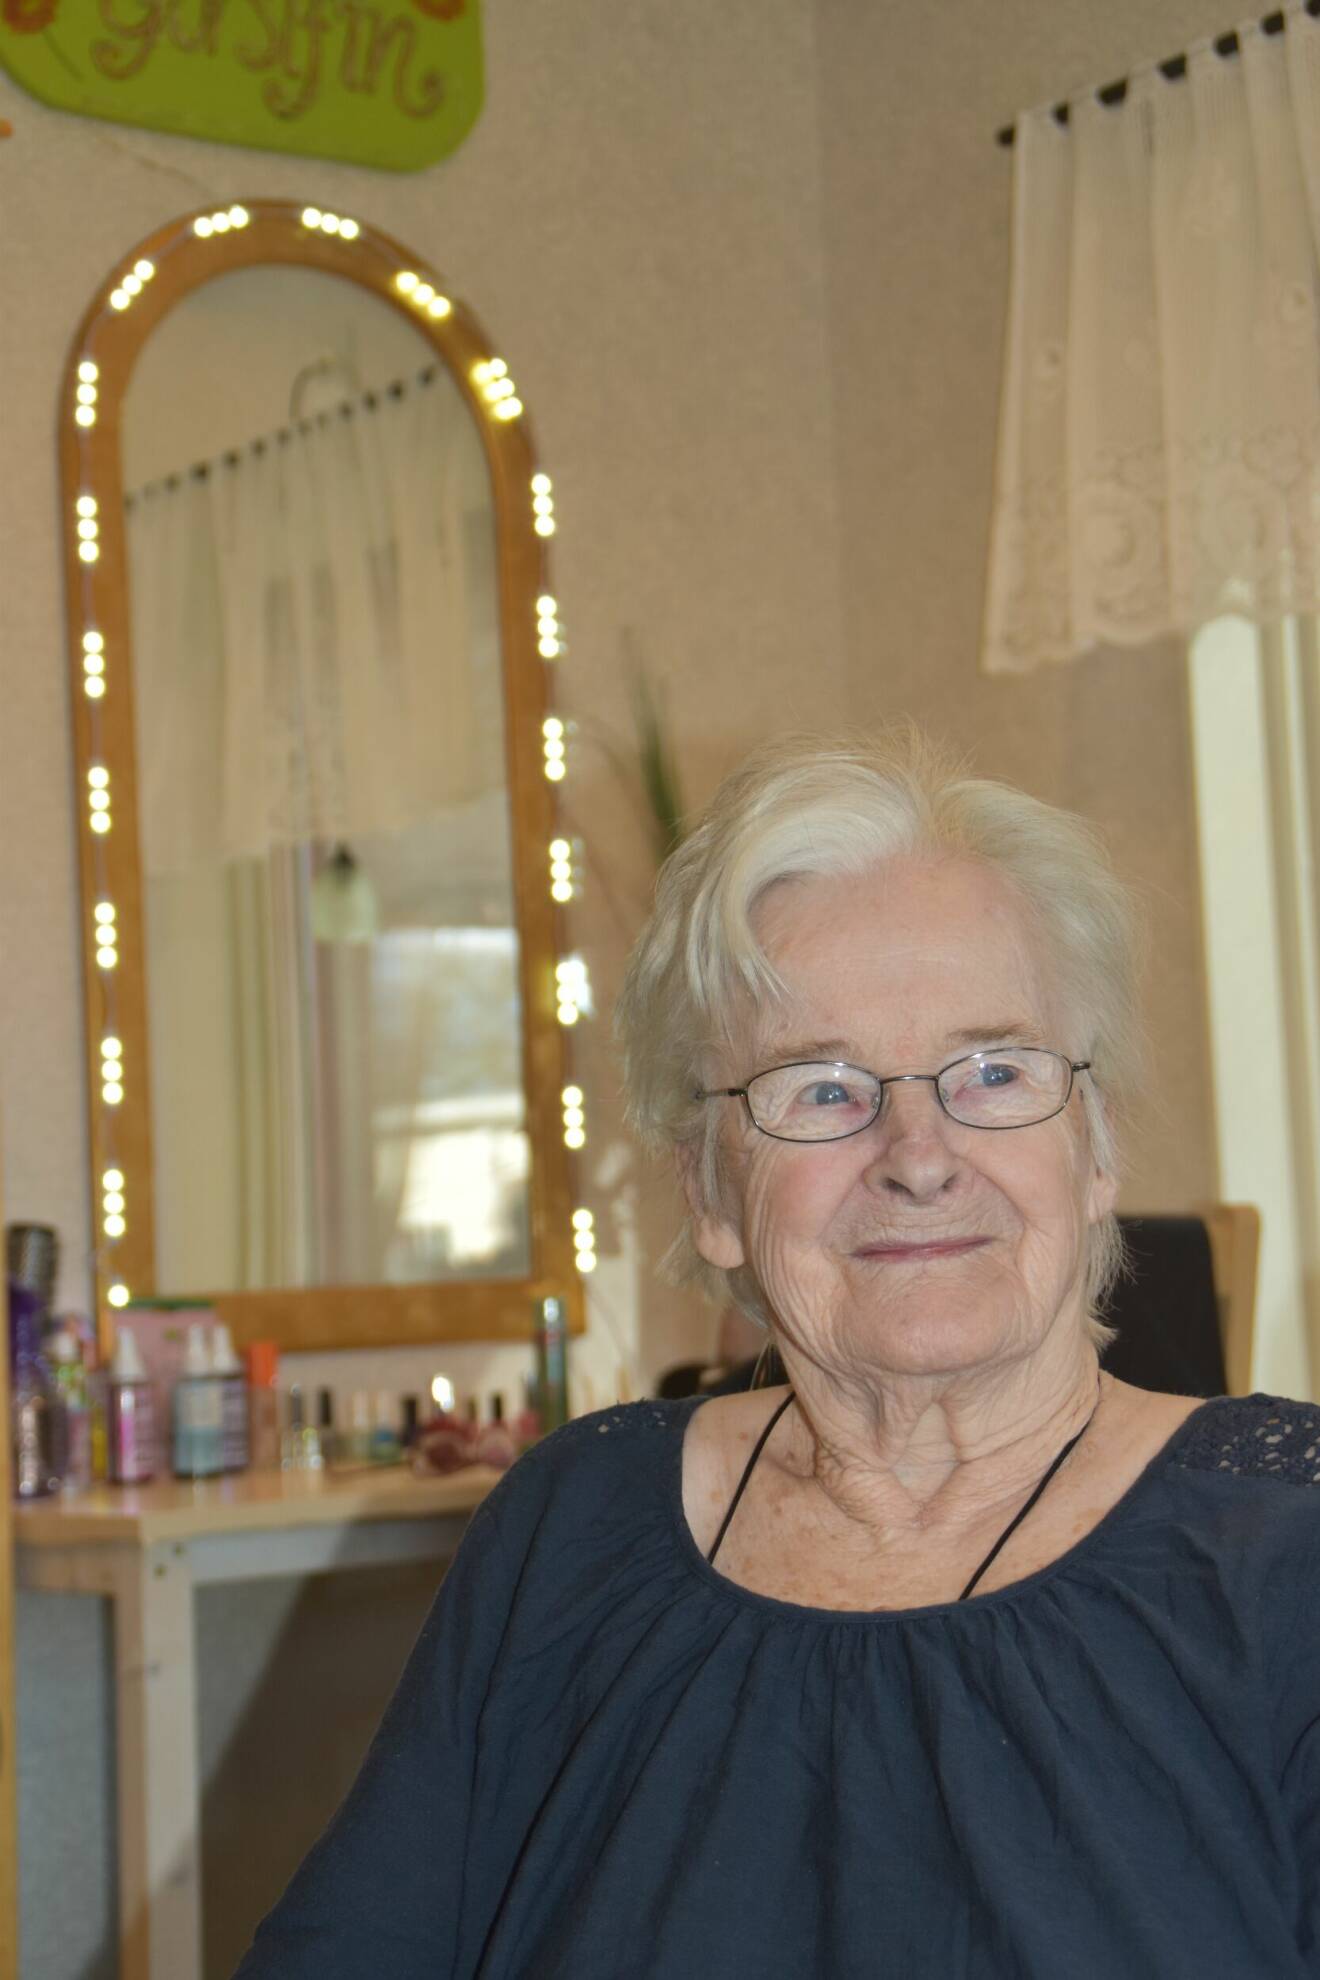 En kvinna på äldreboendet tittar nöjt in i kameran efter att ha fått både sig hår lagt och sina naglar målade.